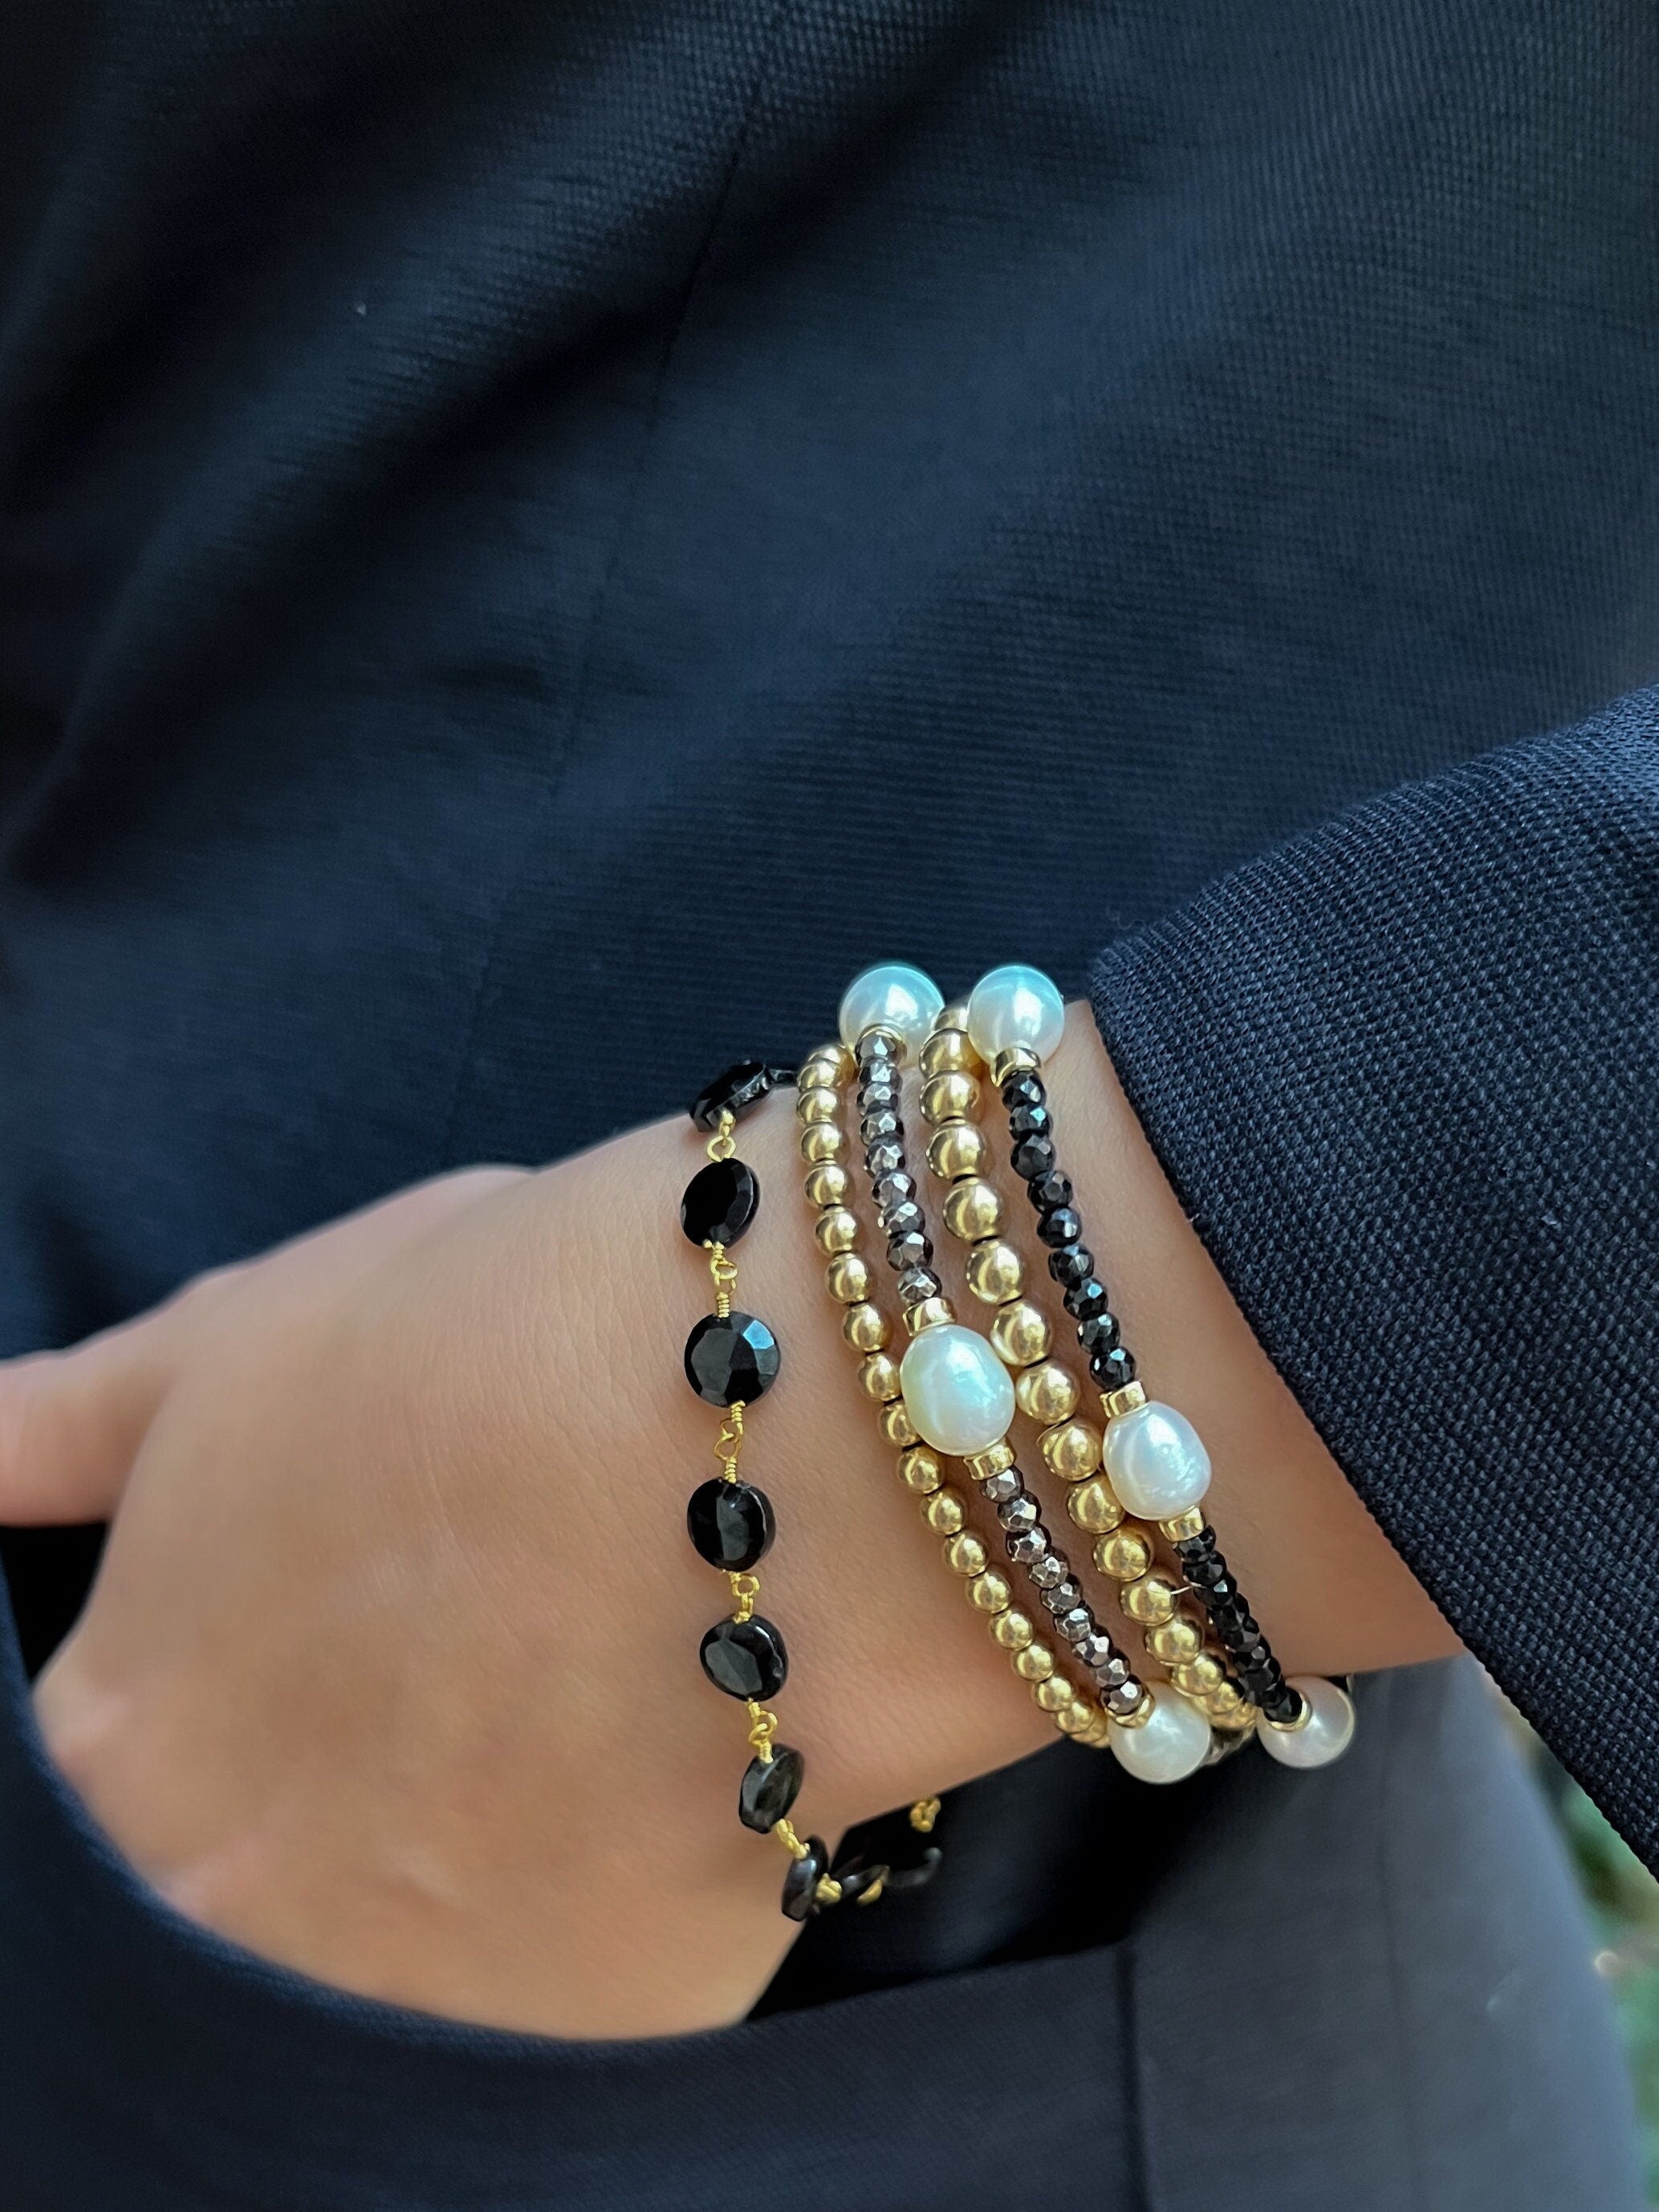 Spinel_bracelet,Black_Spinel,Gemstone_bracelet,Natural_Gemstones,Black_bead_bracelet,Gifts_for_Her,Mother's_Day_Gifts,Dainty_bracelet,Gold_filled,Chain_bracelet,Handmade_bracelet,Black_gemstone,Coin_shaped_beads